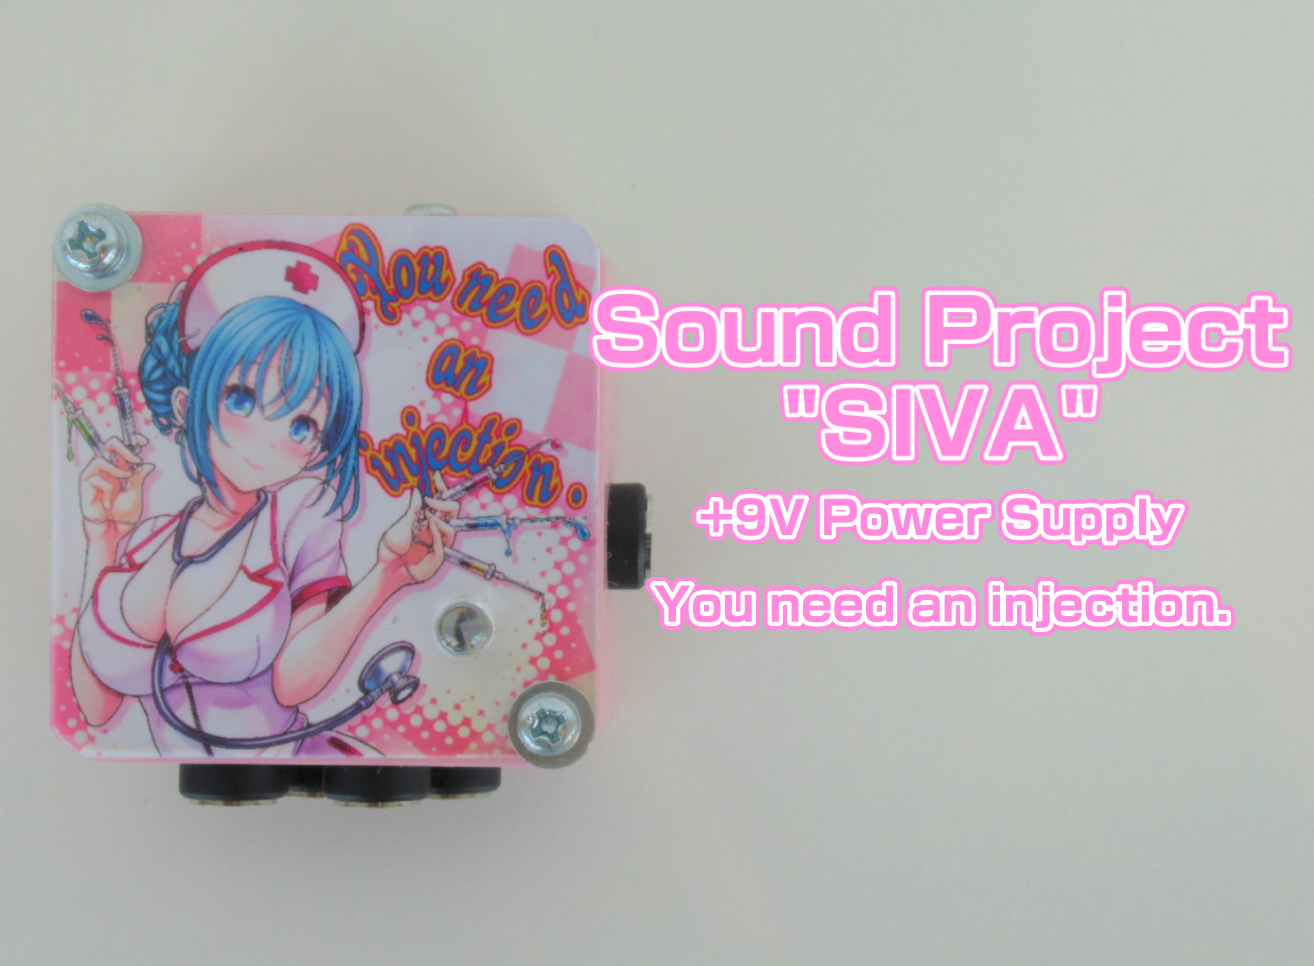 エフェクター】Sound Project “SIVA” You need an injection.展示し ...